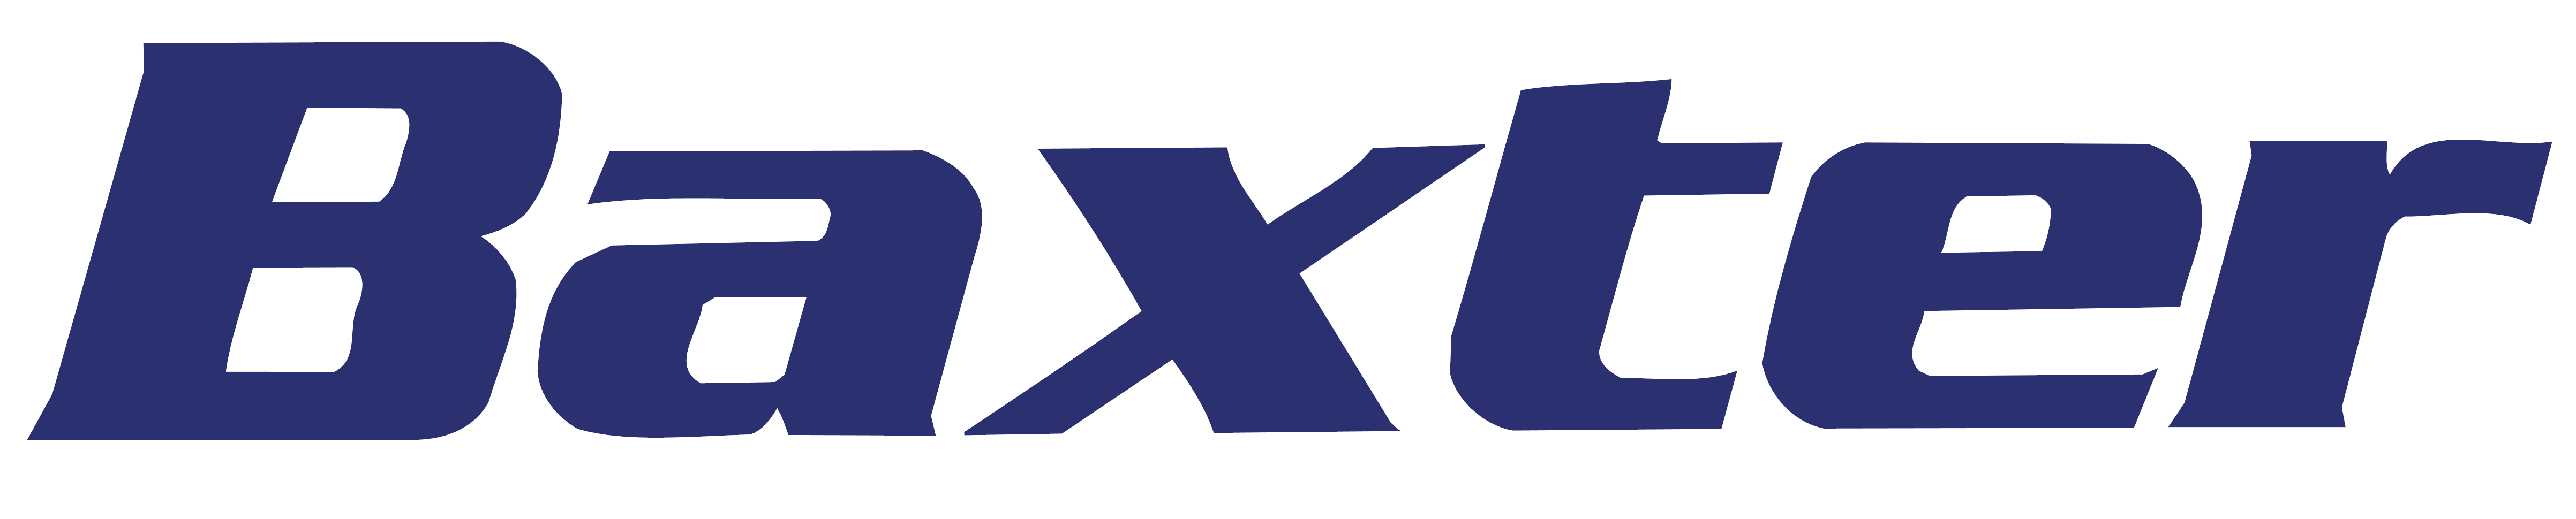 Baxter logo, logotype